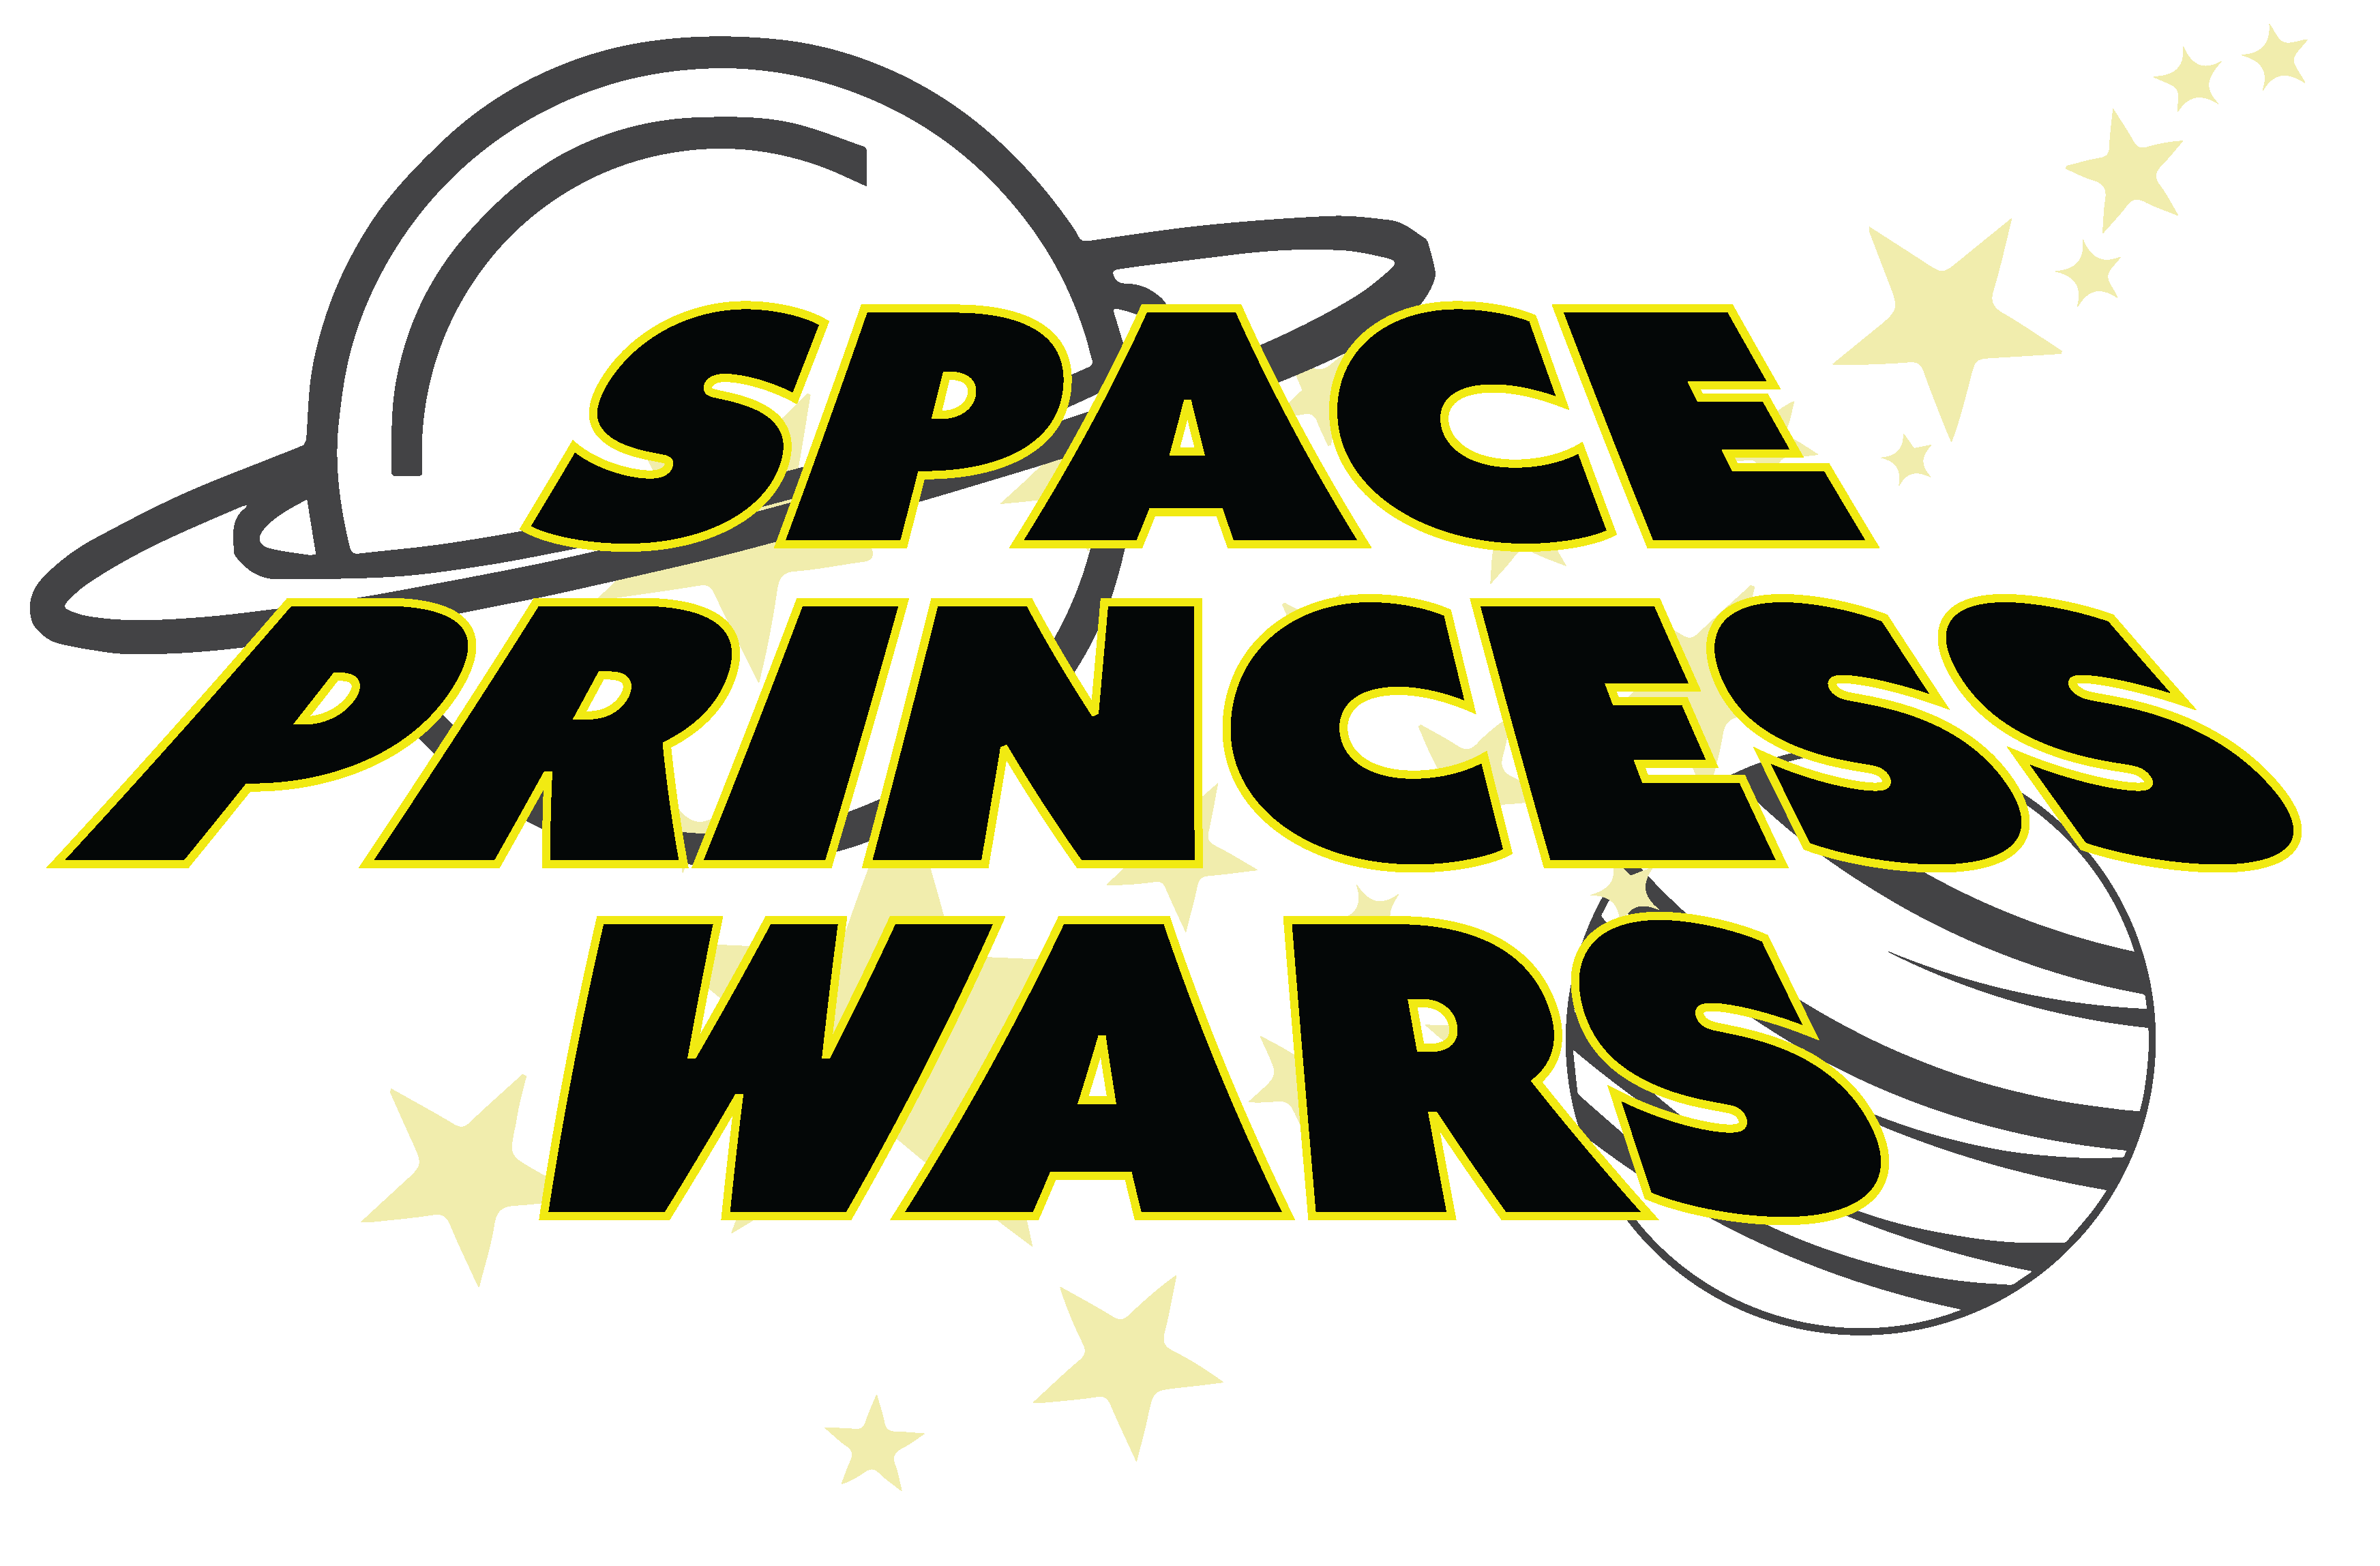 space princess wars logo